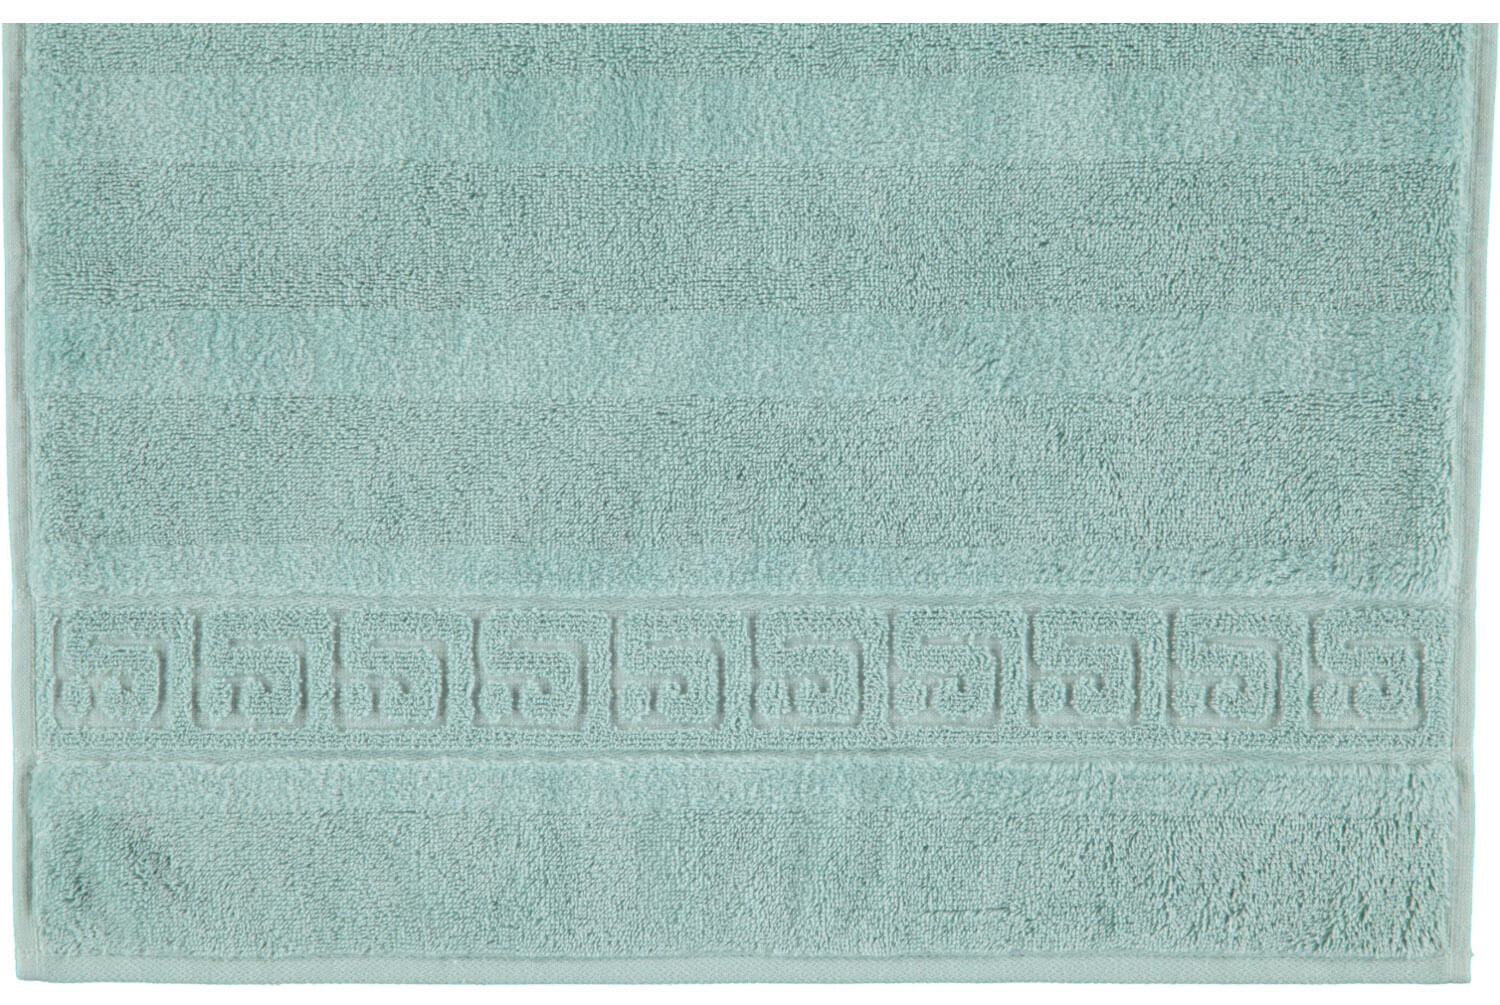 Махровое полотенце Noblesse Uni #1 Seegrun ☞ Размер: 30 x 50 см